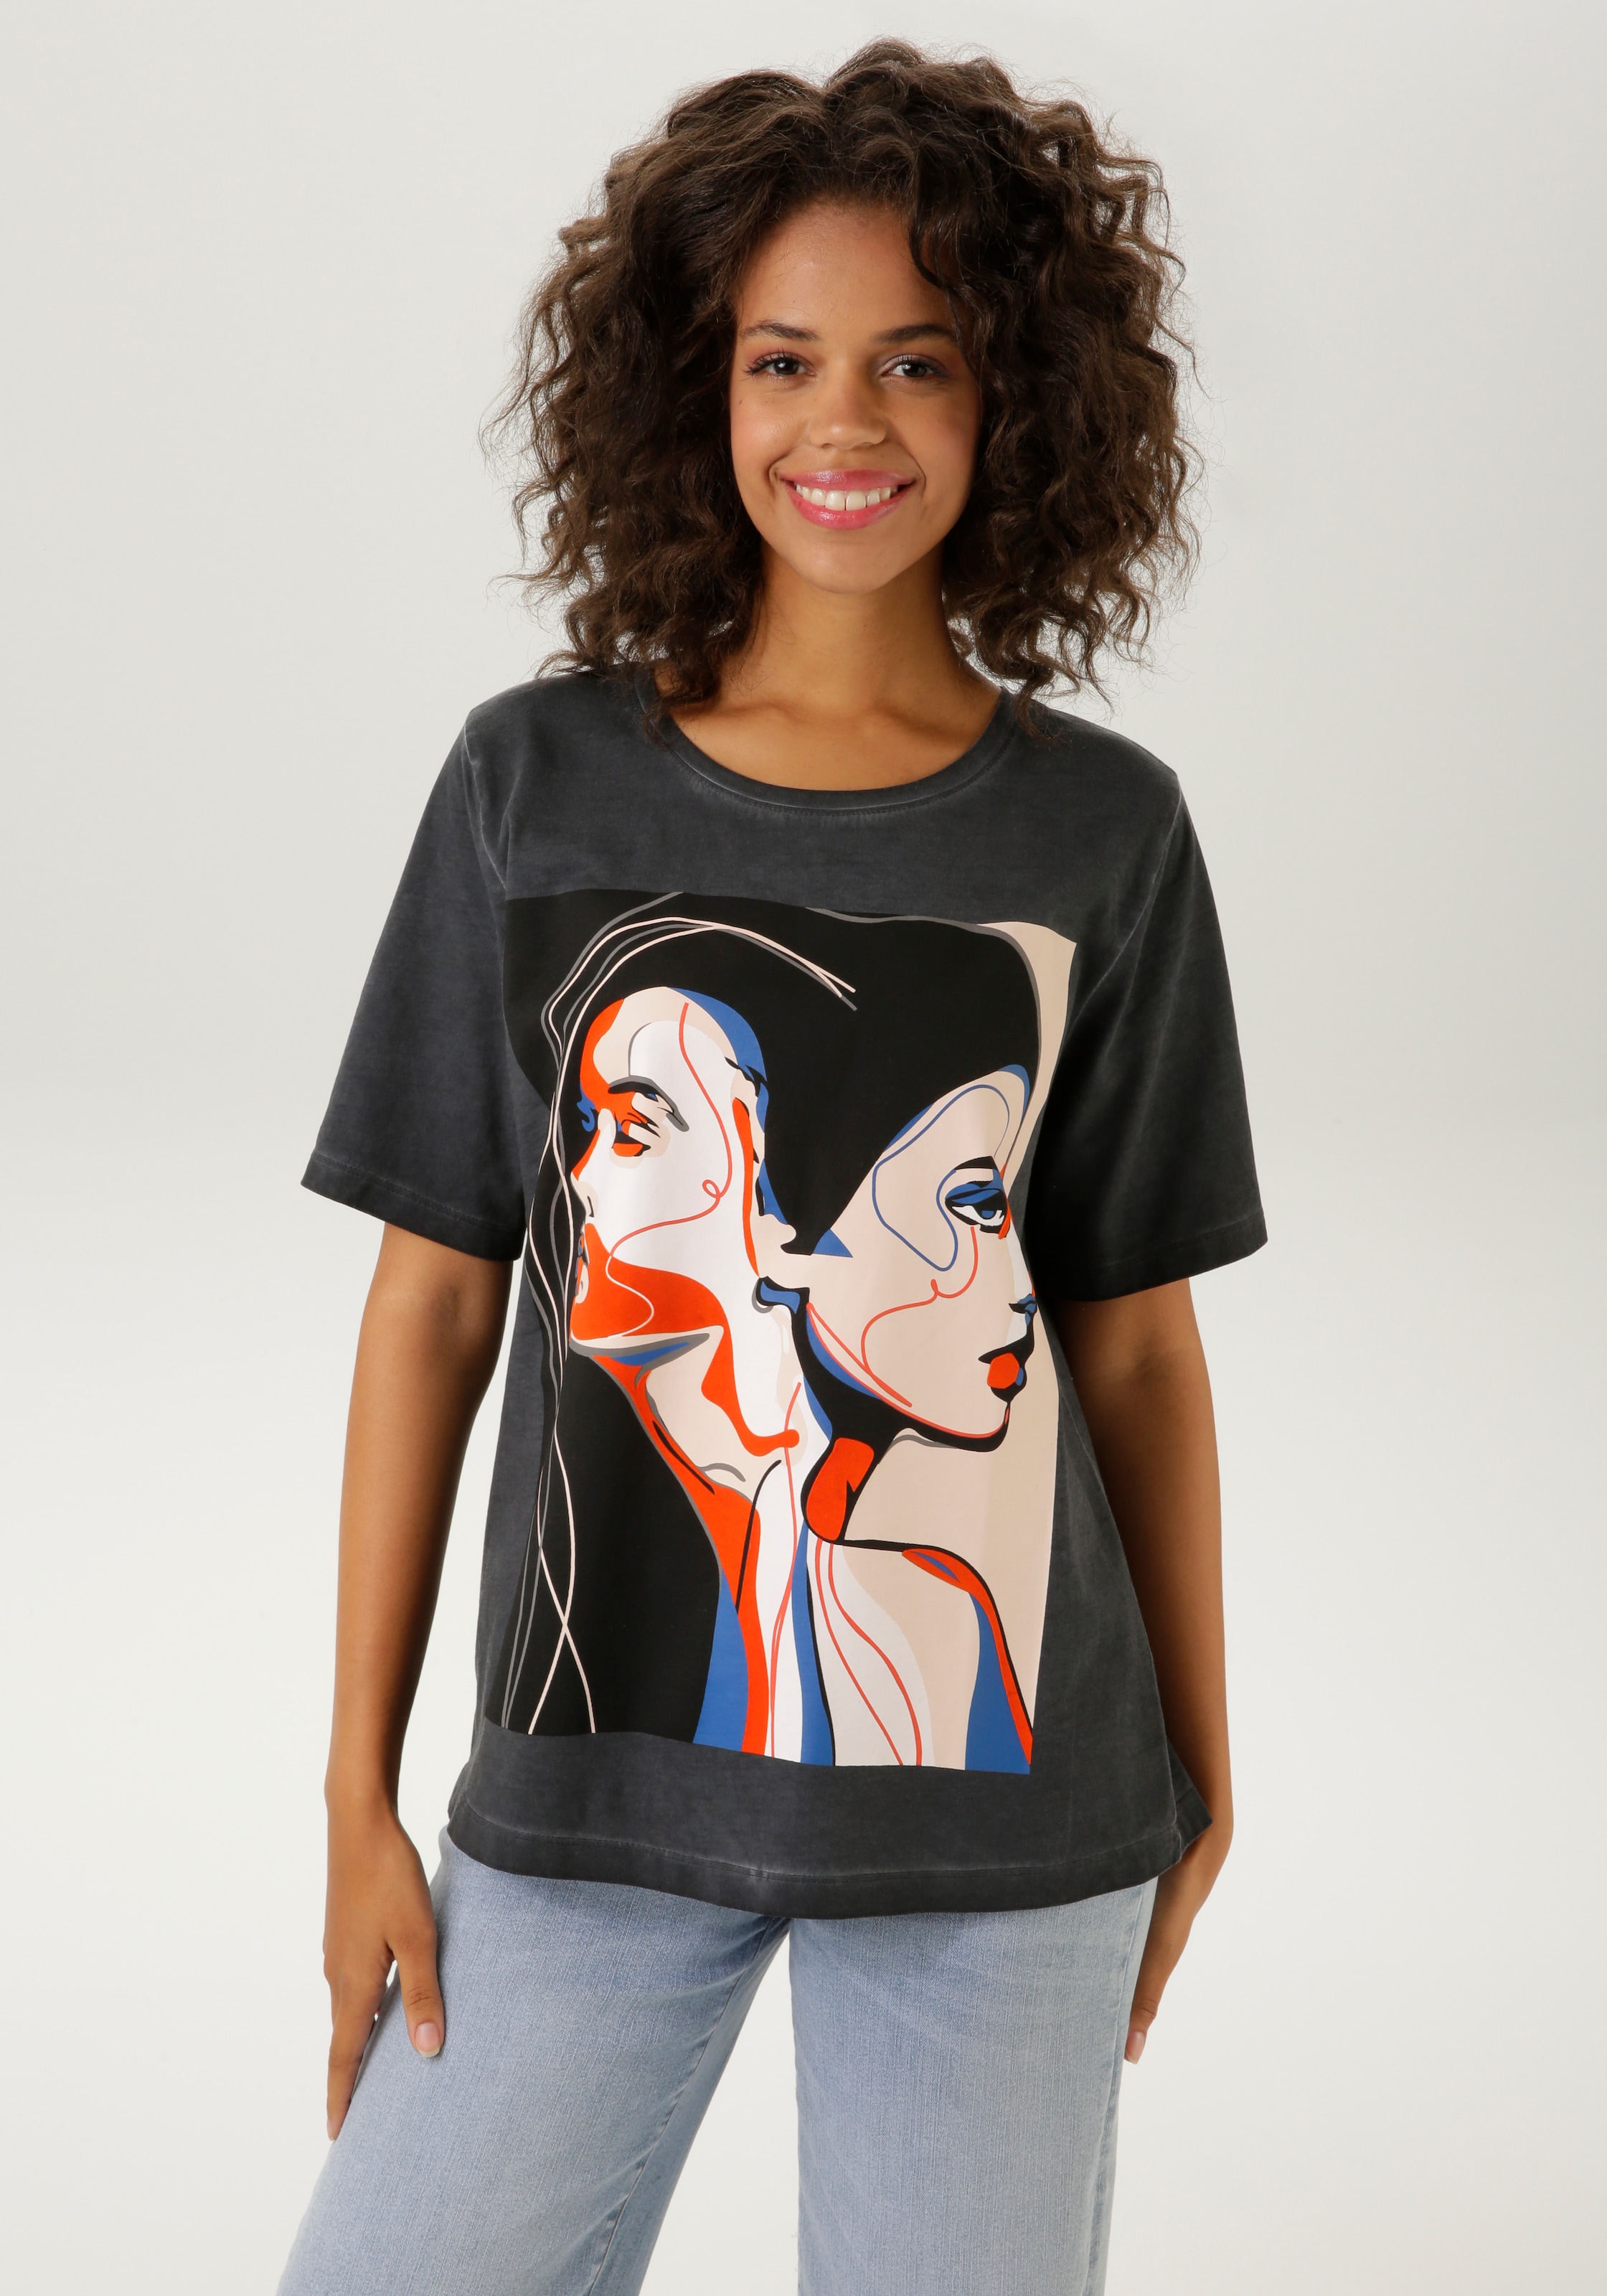 T-Shirt, mit kunstvoll gestalteten Gesichtern bedruckt - NEUE KOLLEKTION